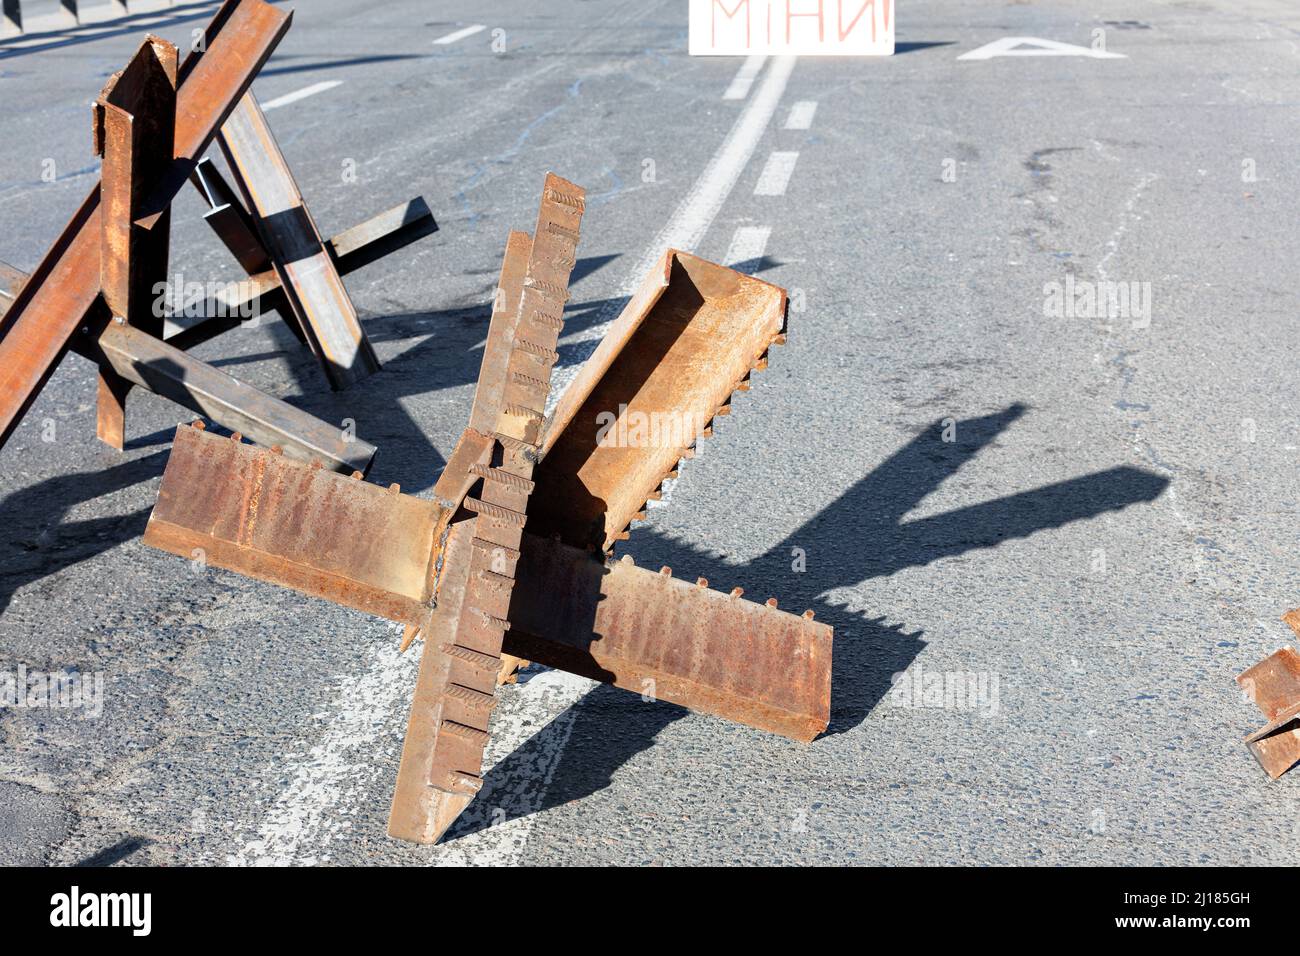 Guerre de la Russie contre l'Ukraine. Structures métalliques anti-chars dans les rues de Kiev. Antichar hedgehogs sur la chaussée d'une route de ville par une journée ensoleillée. Banque D'Images